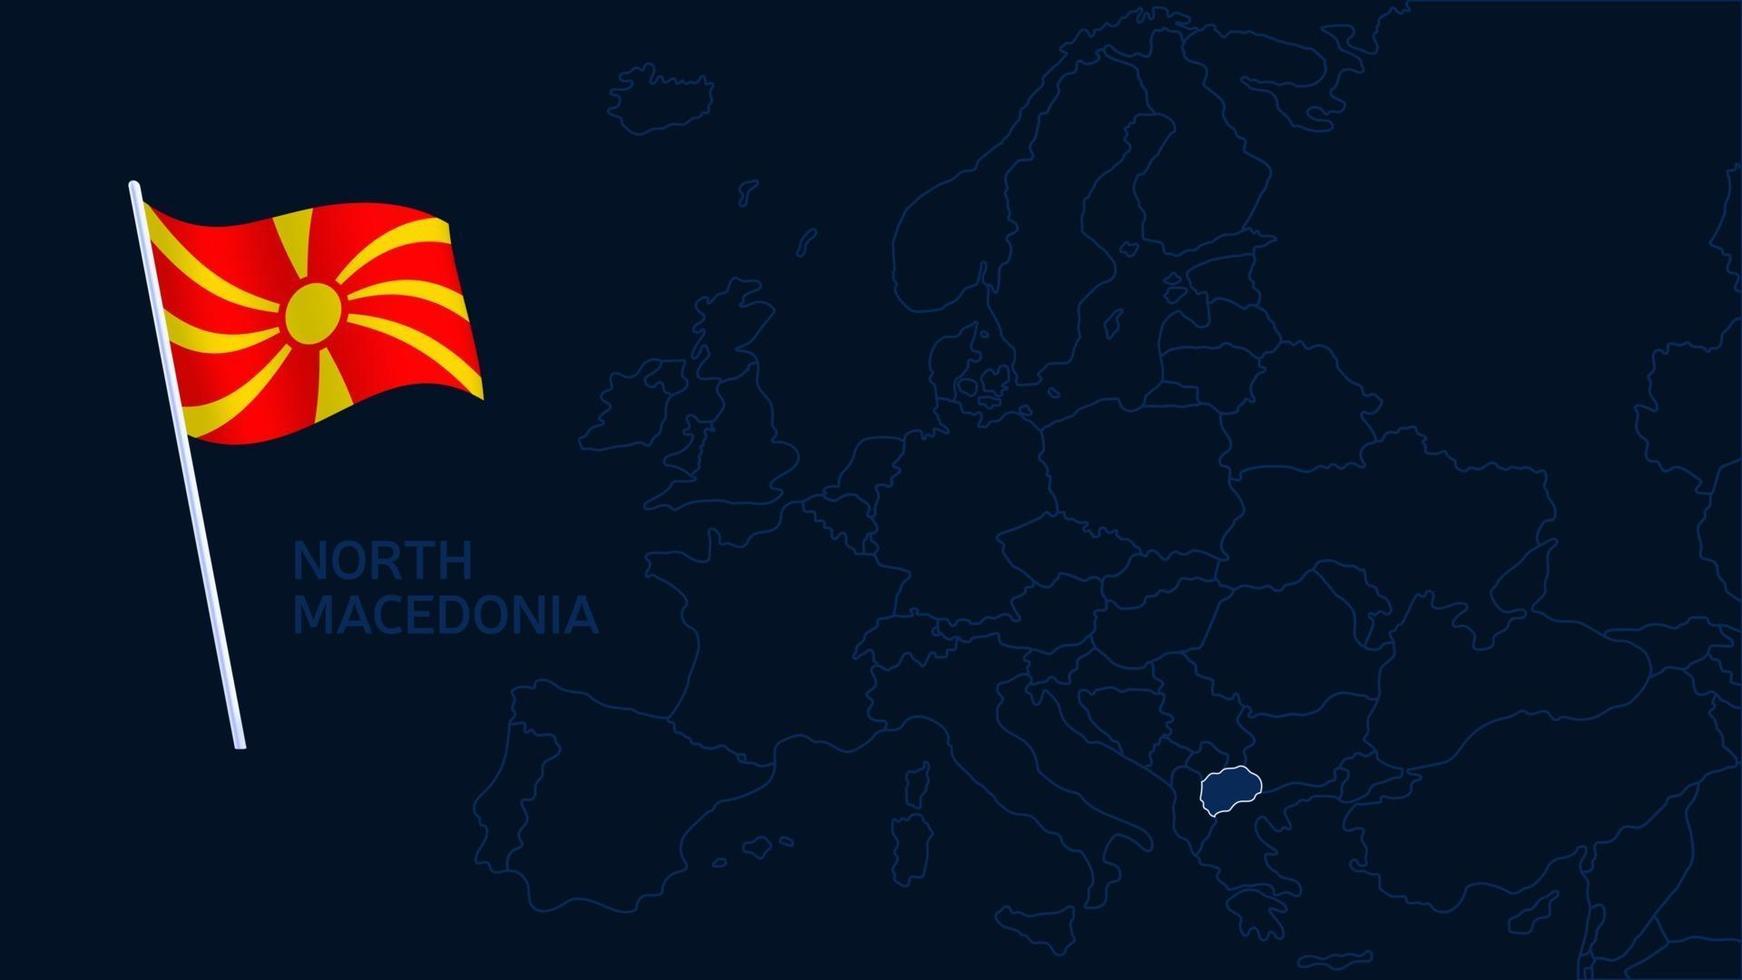 Macedonia del Nord sulla mappa dell'Europa illustrazione vettoriale. Mappa di alta qualità dell'Europa con i confini delle regioni su sfondo scuro con bandiera nazionale. vettore